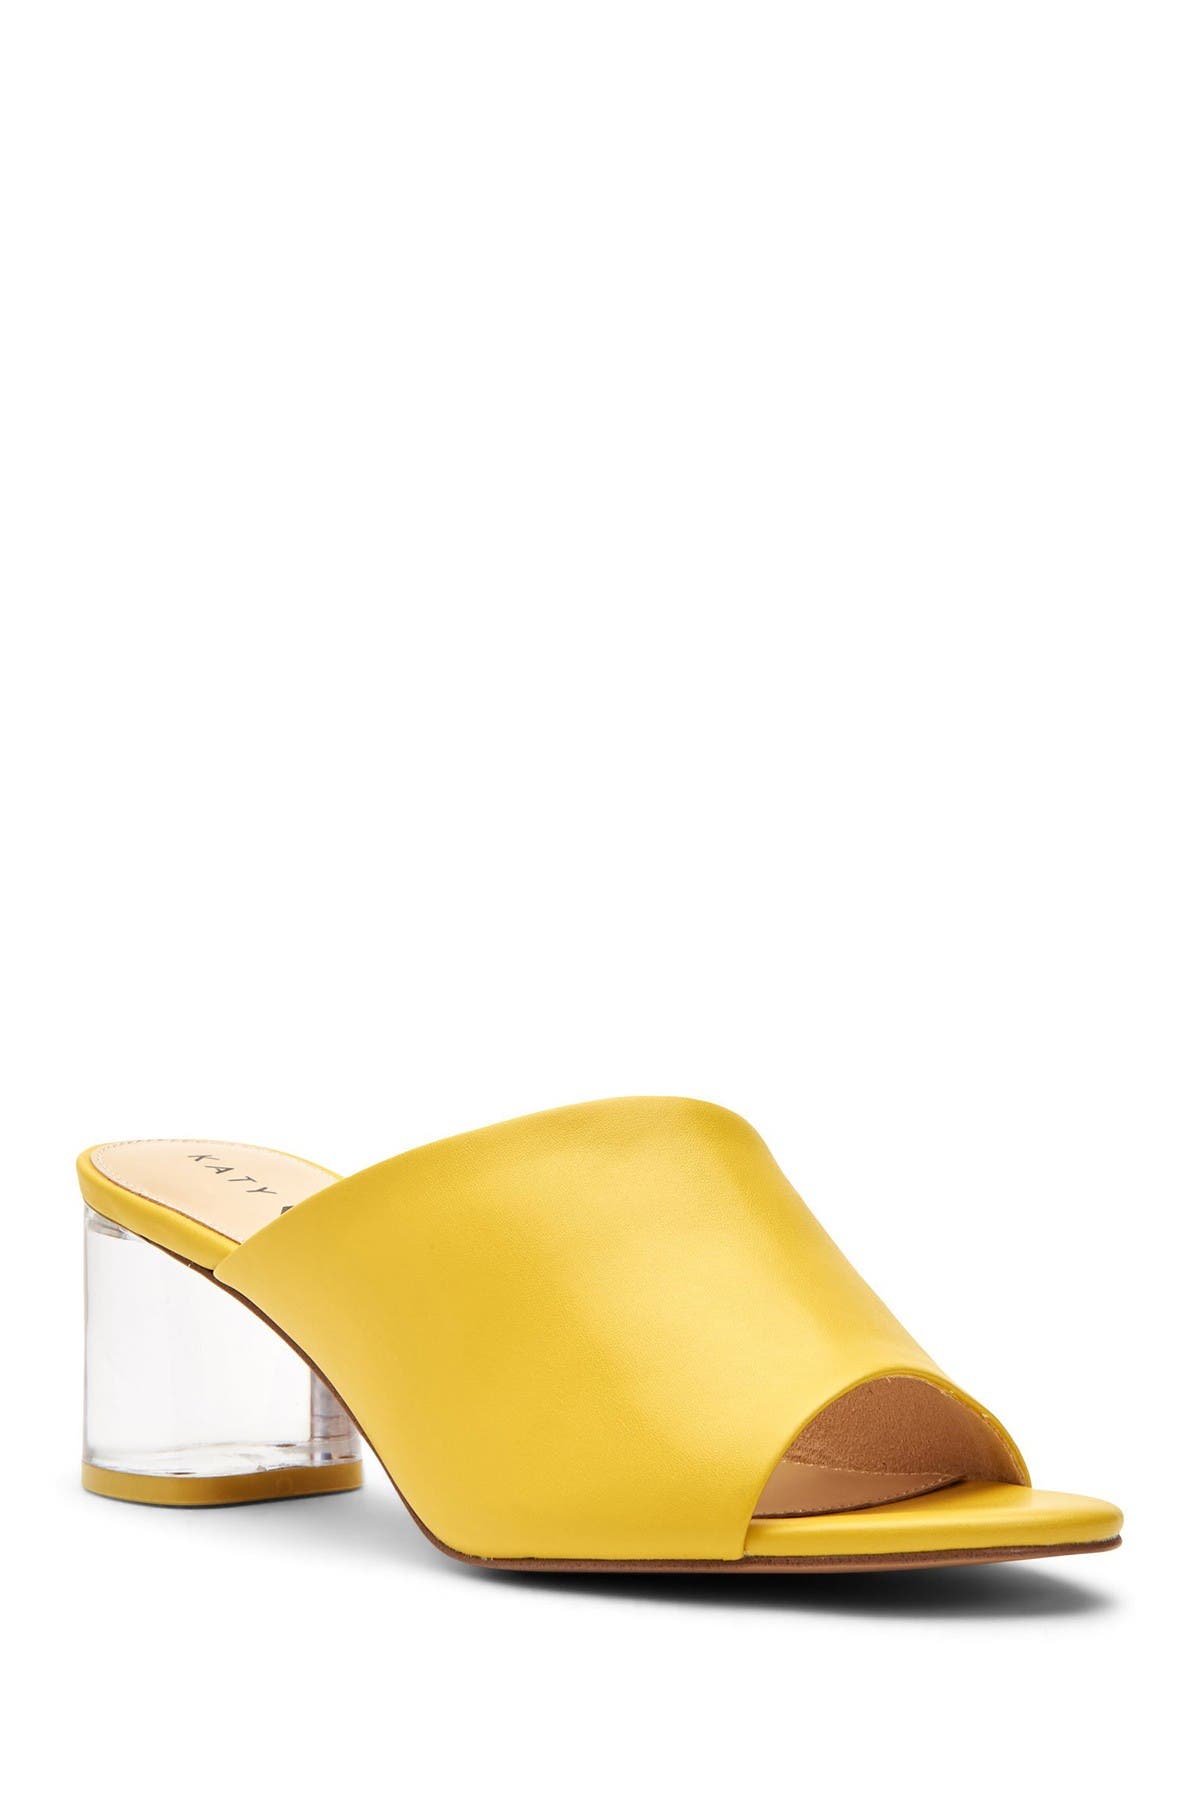 nordstrom rack gold heels